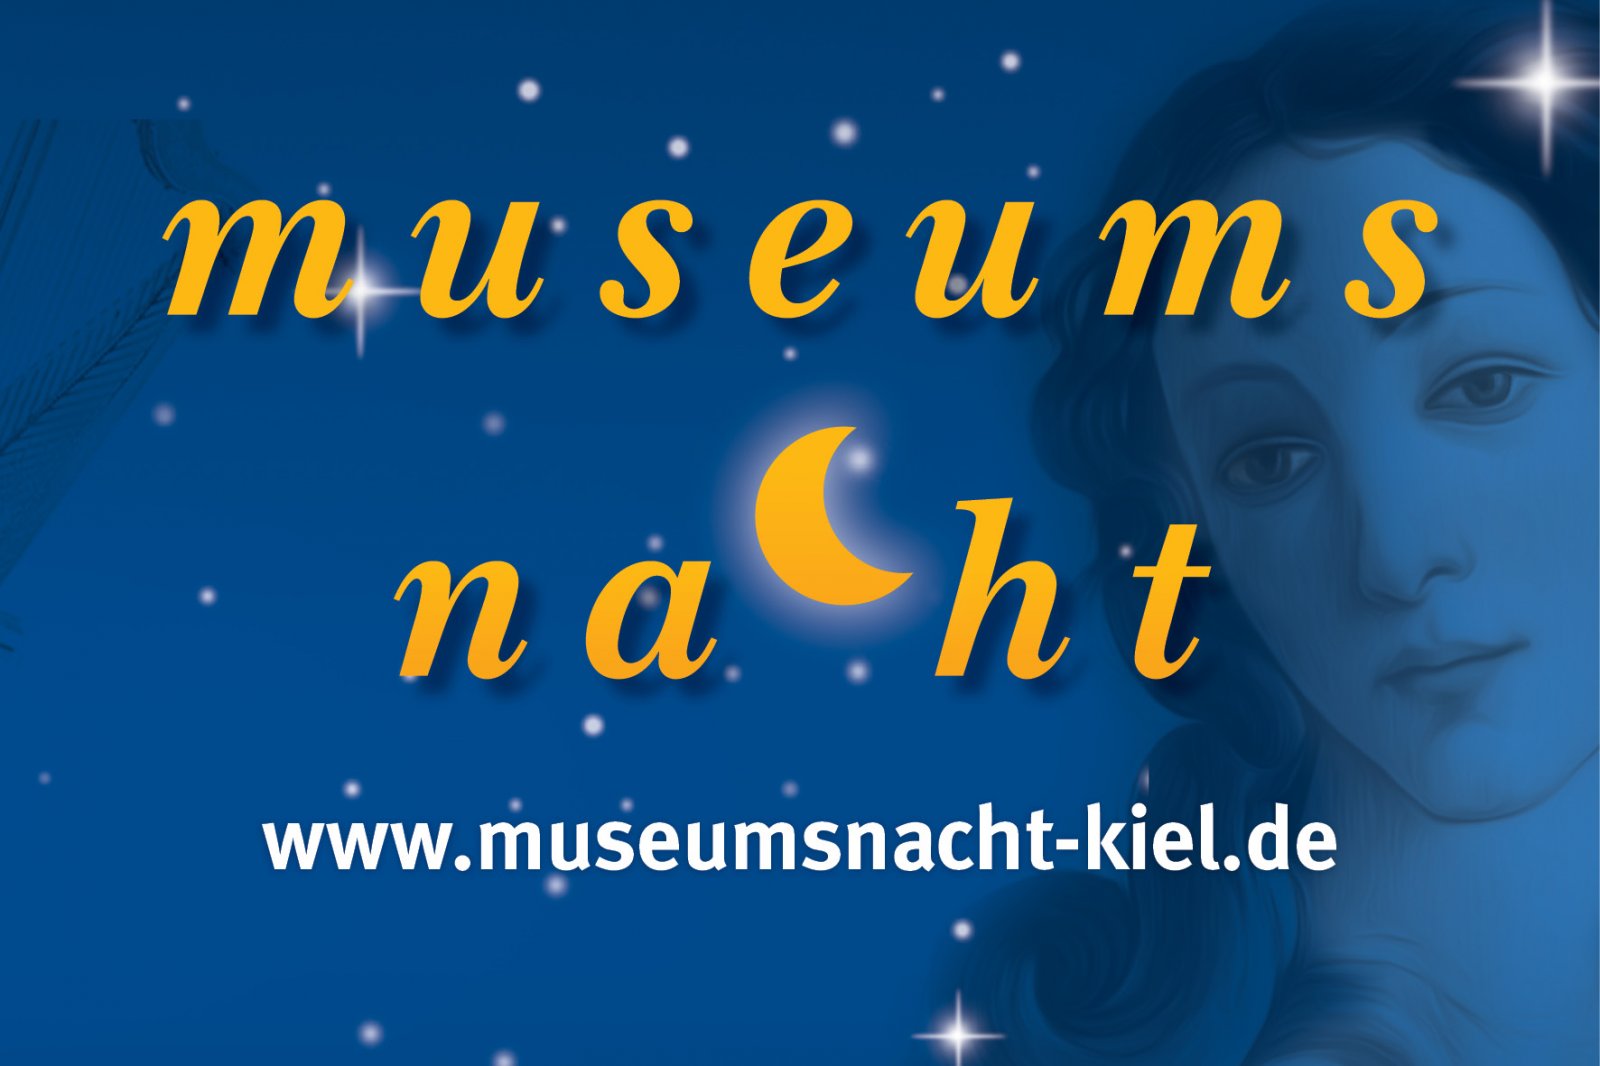 Museumsnacht